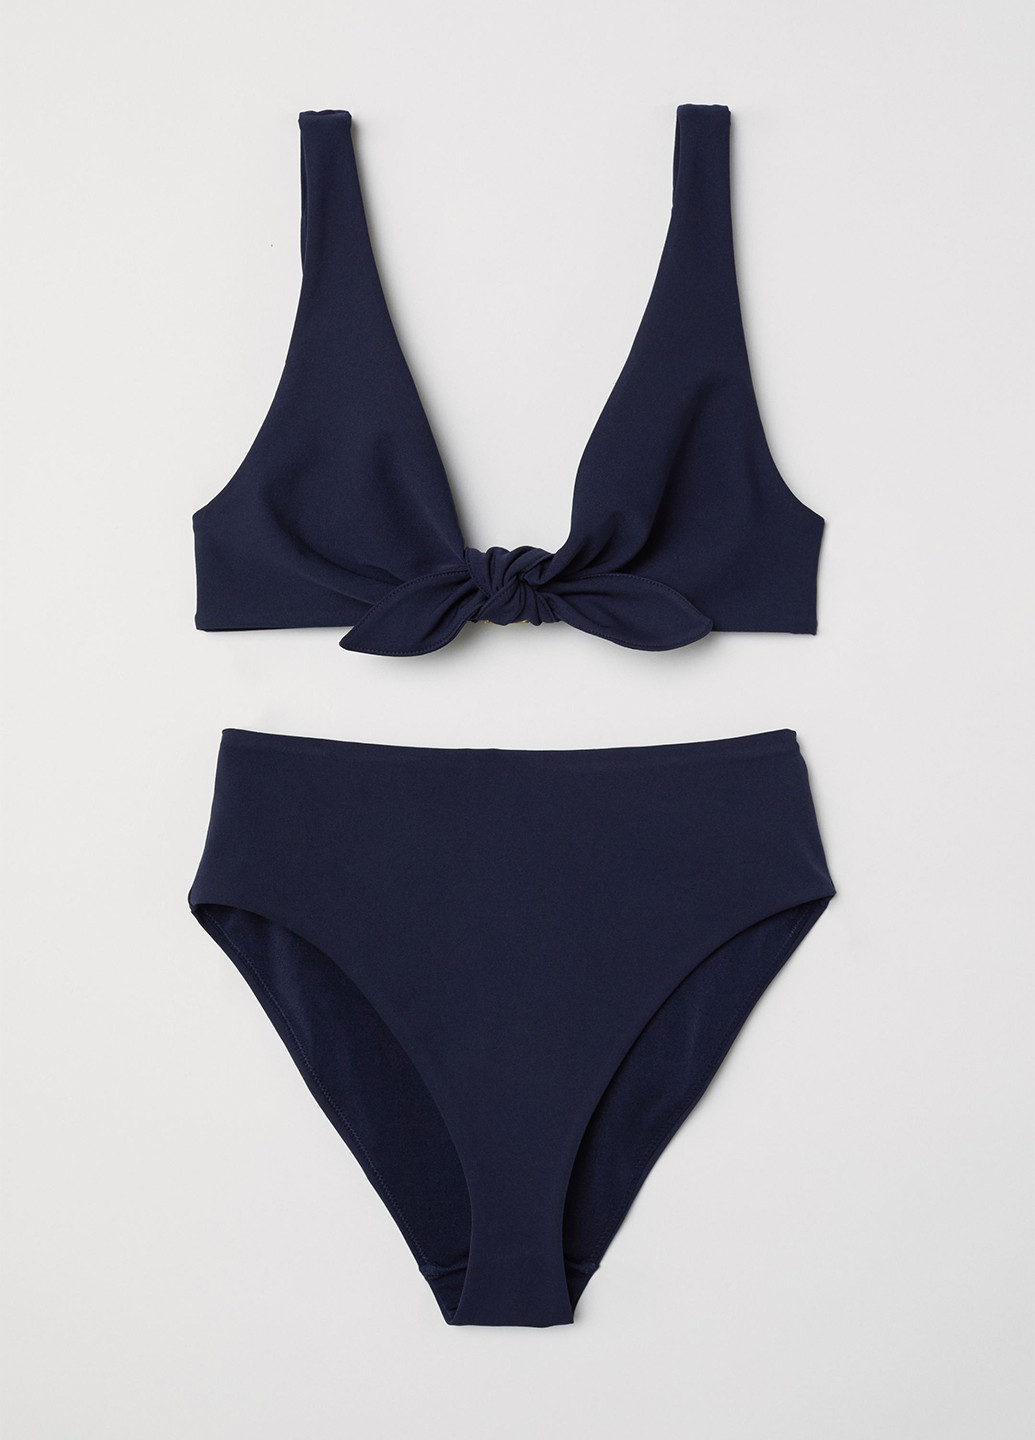 Купальный лиф H&M топ однотонный тёмно-синий пляжный полиамид, трикотаж